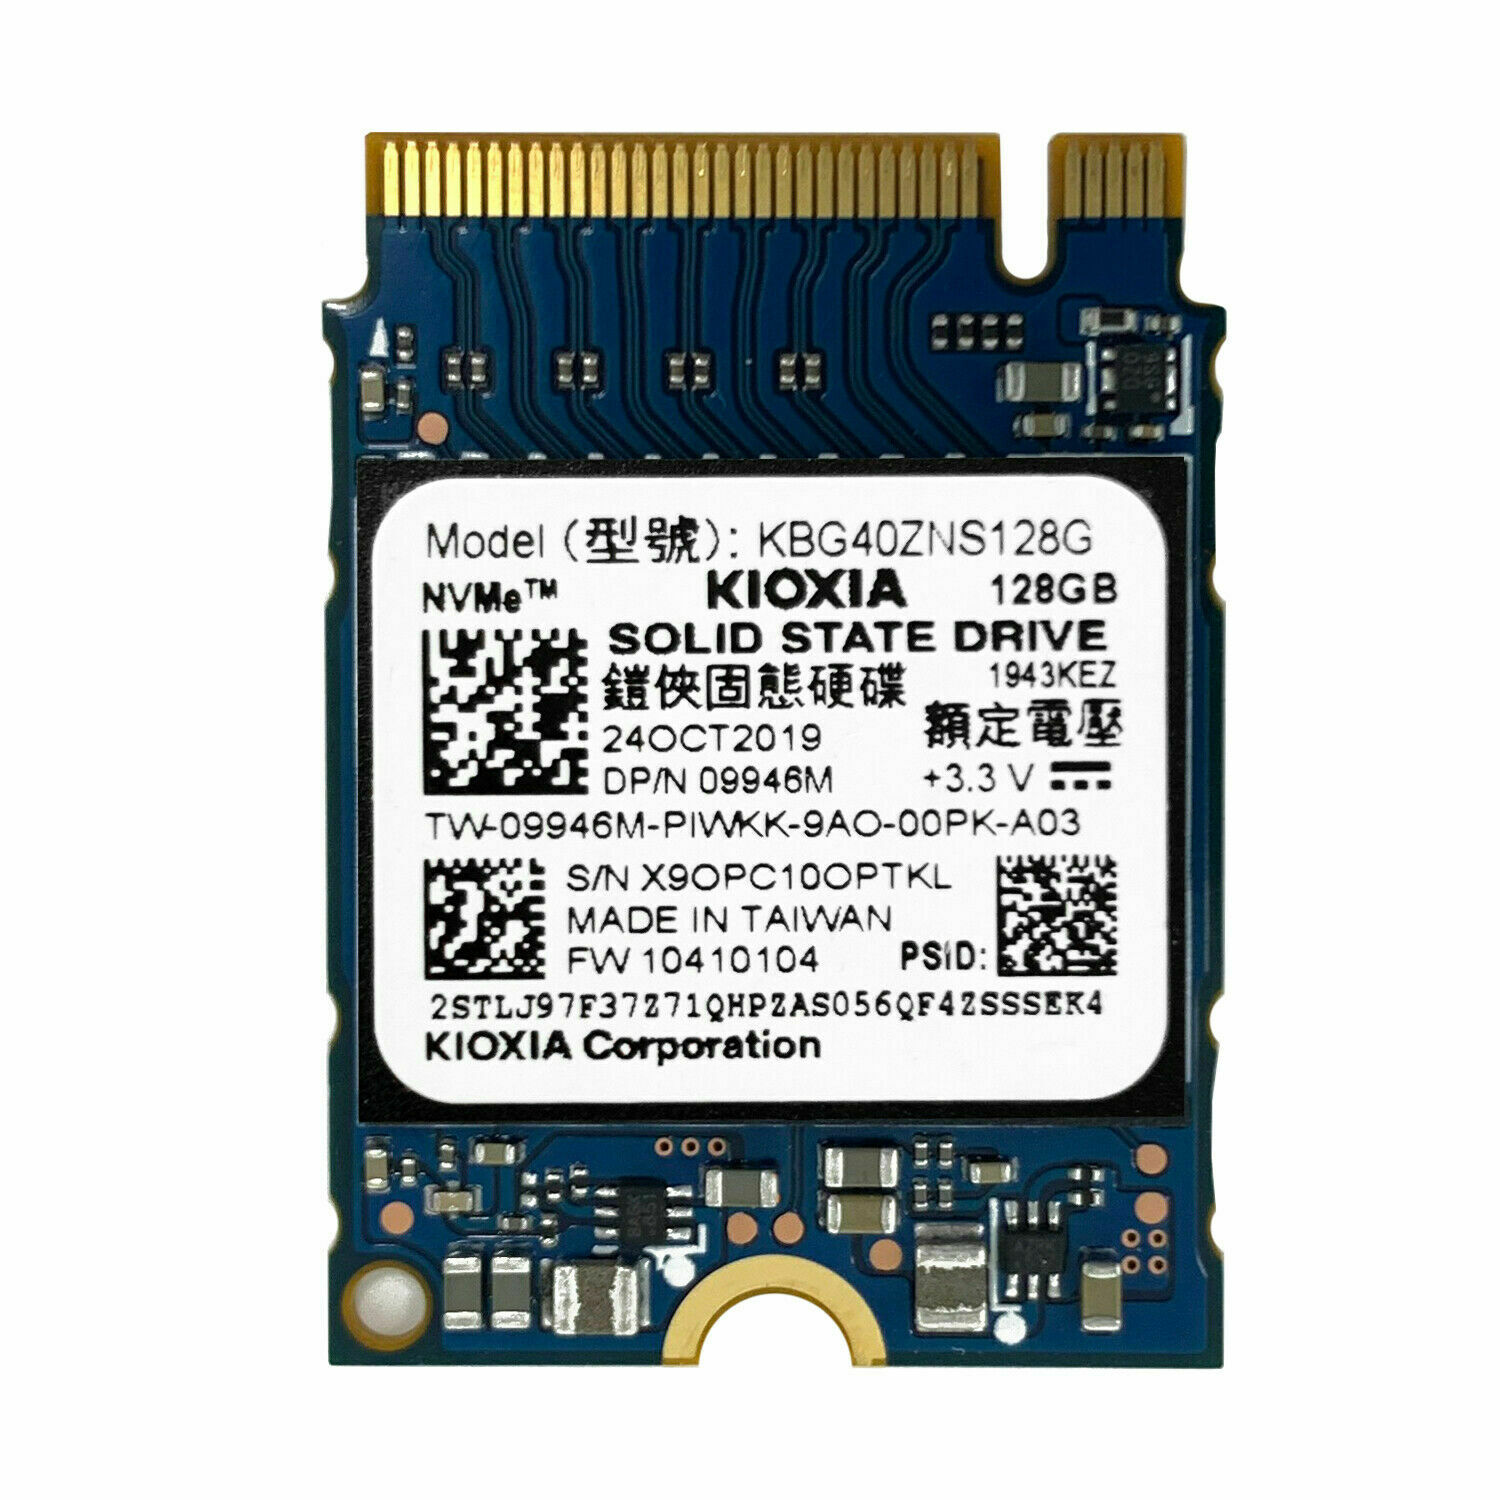 Kioxia Former Toshiba Brand 128gb Pcie Nvme  Ssd (kbg40zns128g)